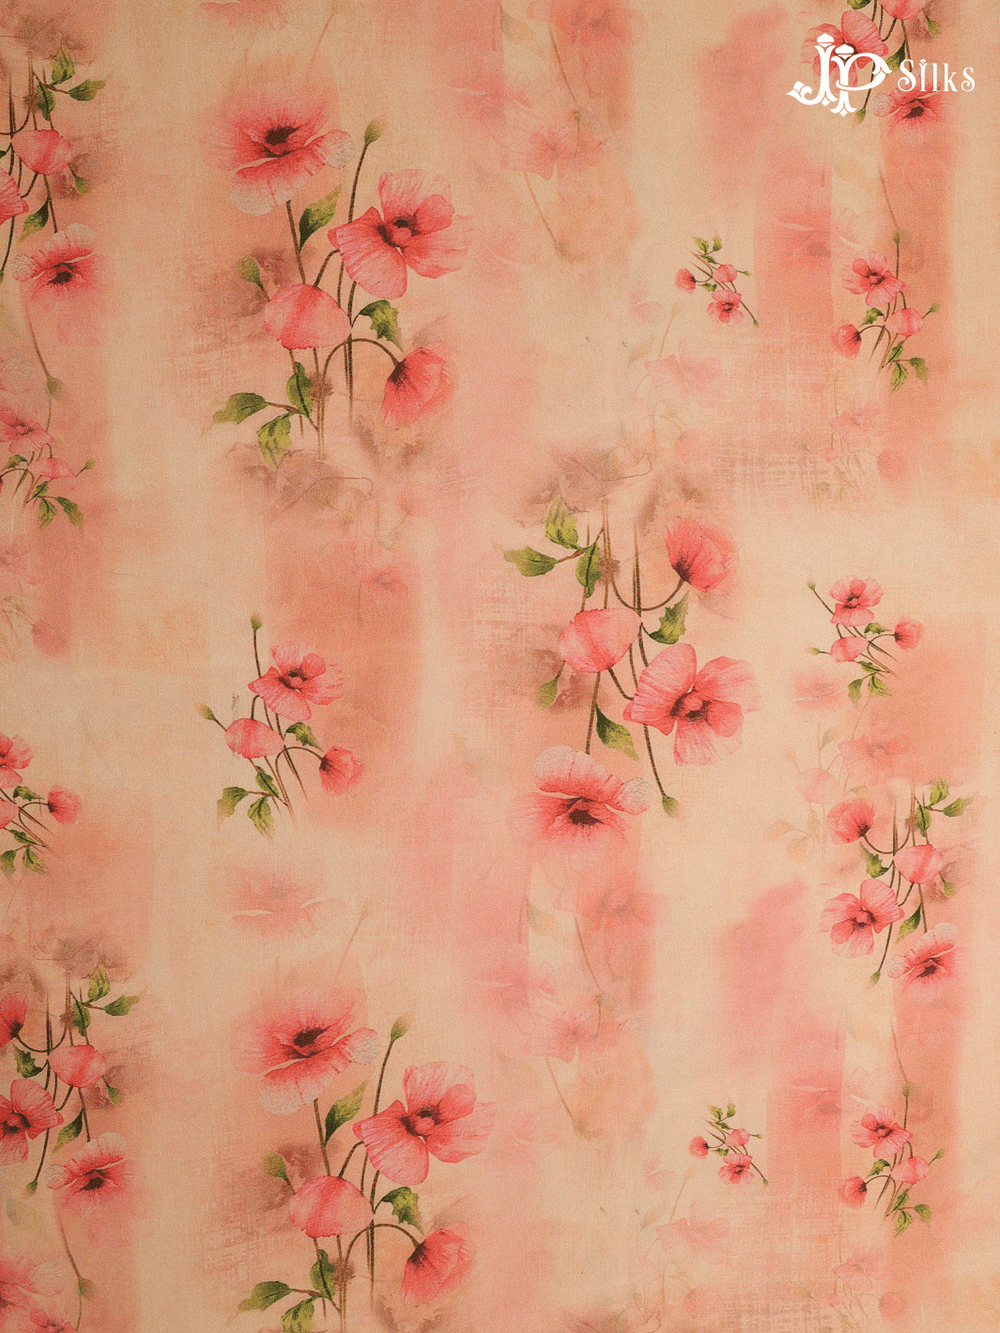 Peach Digital Printed Chiffon Fabric - A14306 - View 1